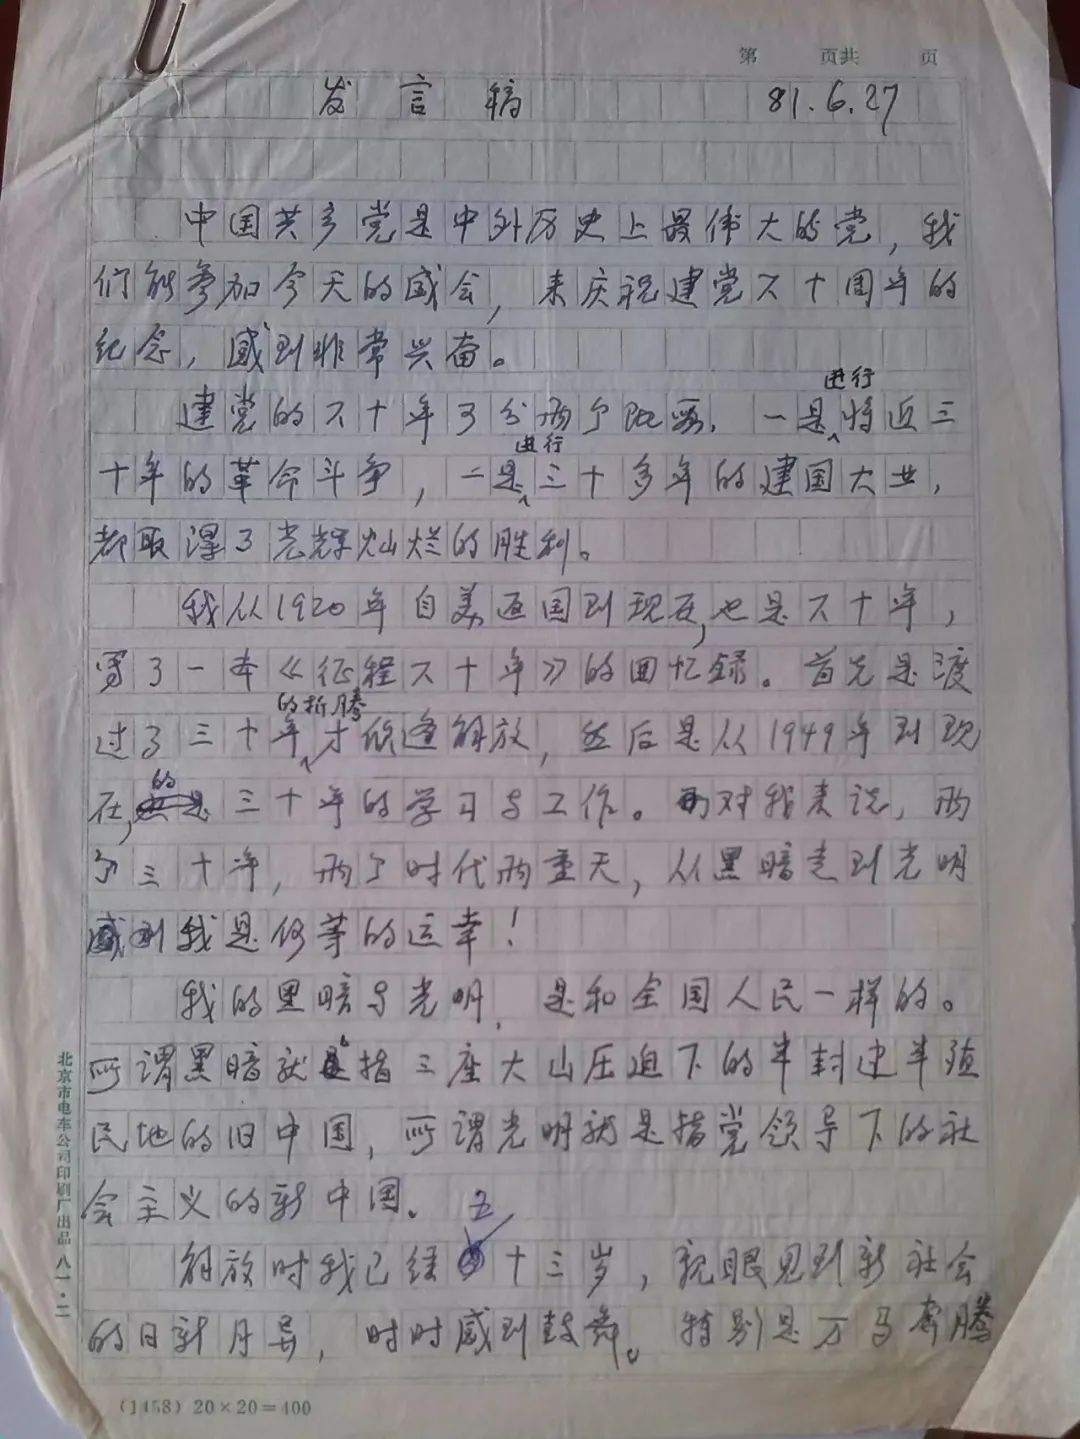 茅以升手稿重现为庆祝中国共产党成立六十周年大会撰写的发言